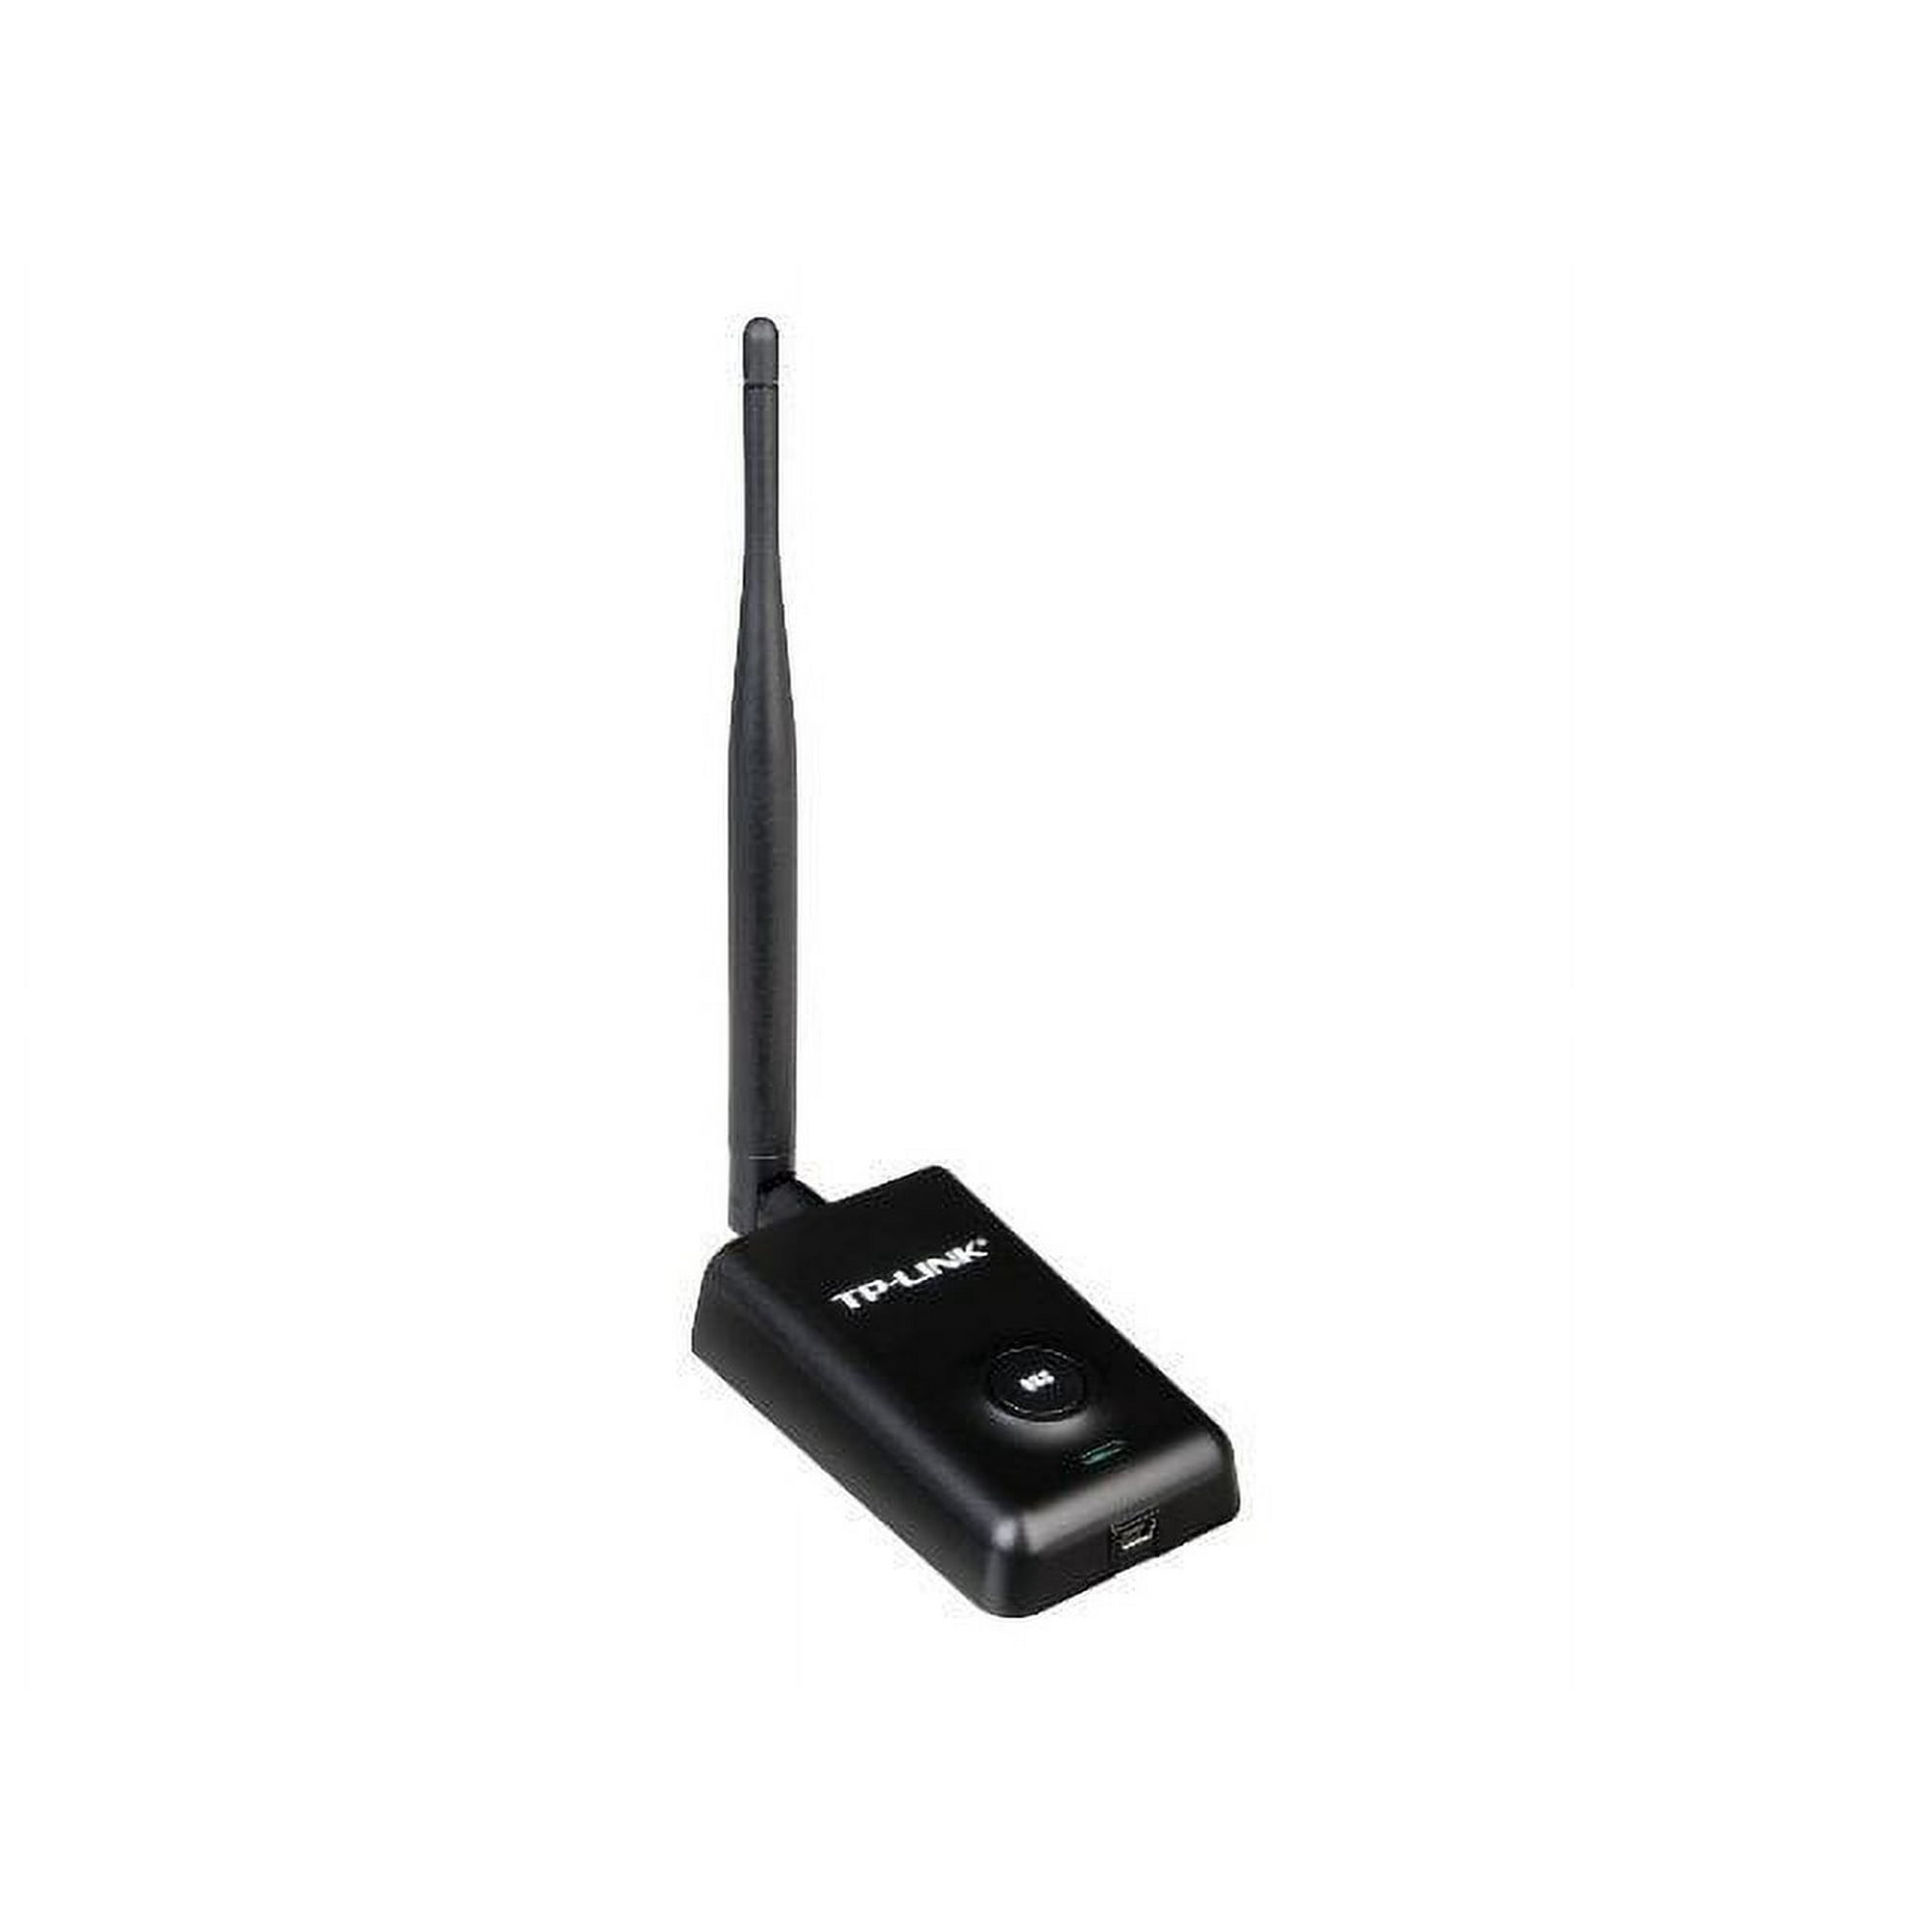 TP-Link TL-WN7200ND - Network adapter USB 2.0 - 802.11b/g/n - Walmart.com